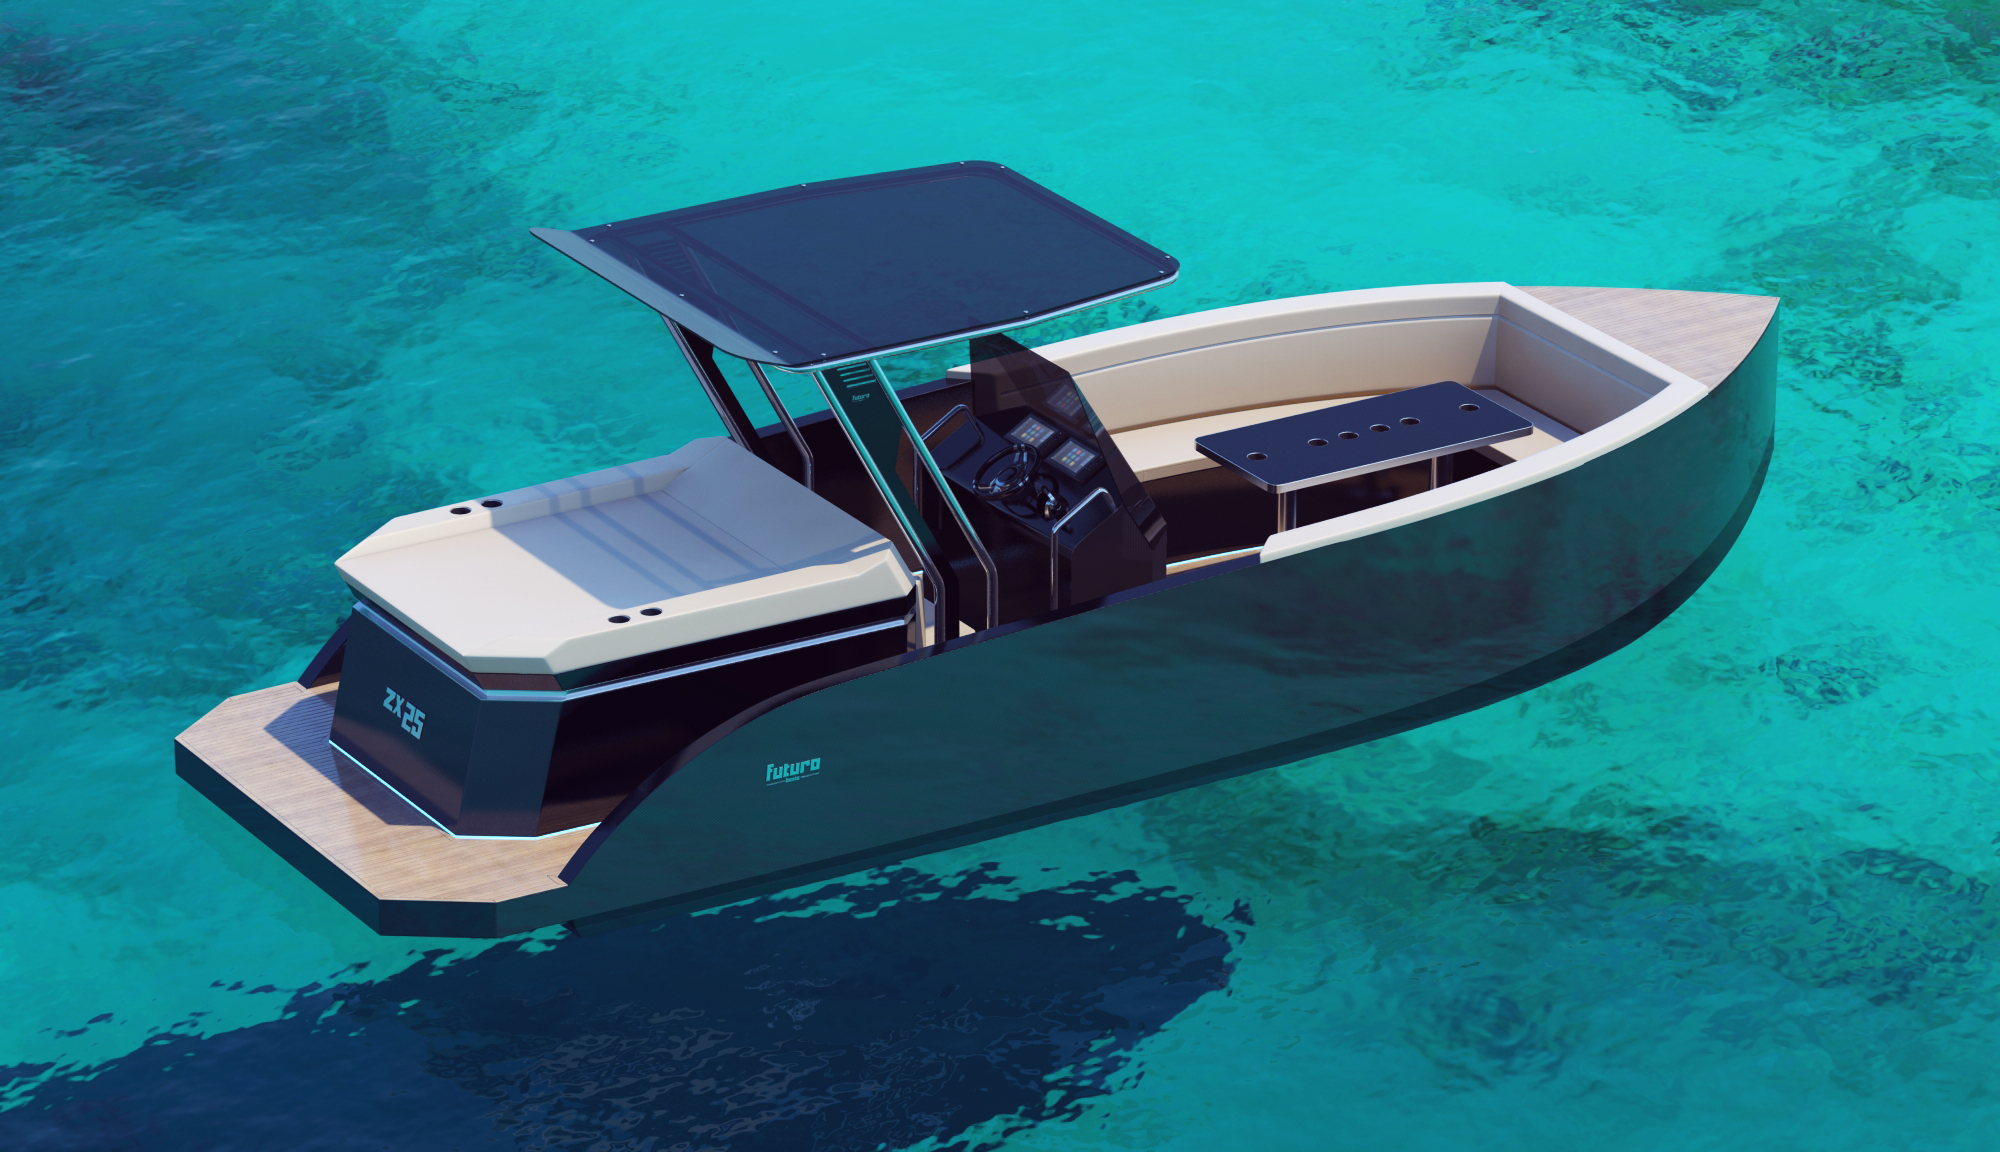 Boat design F25